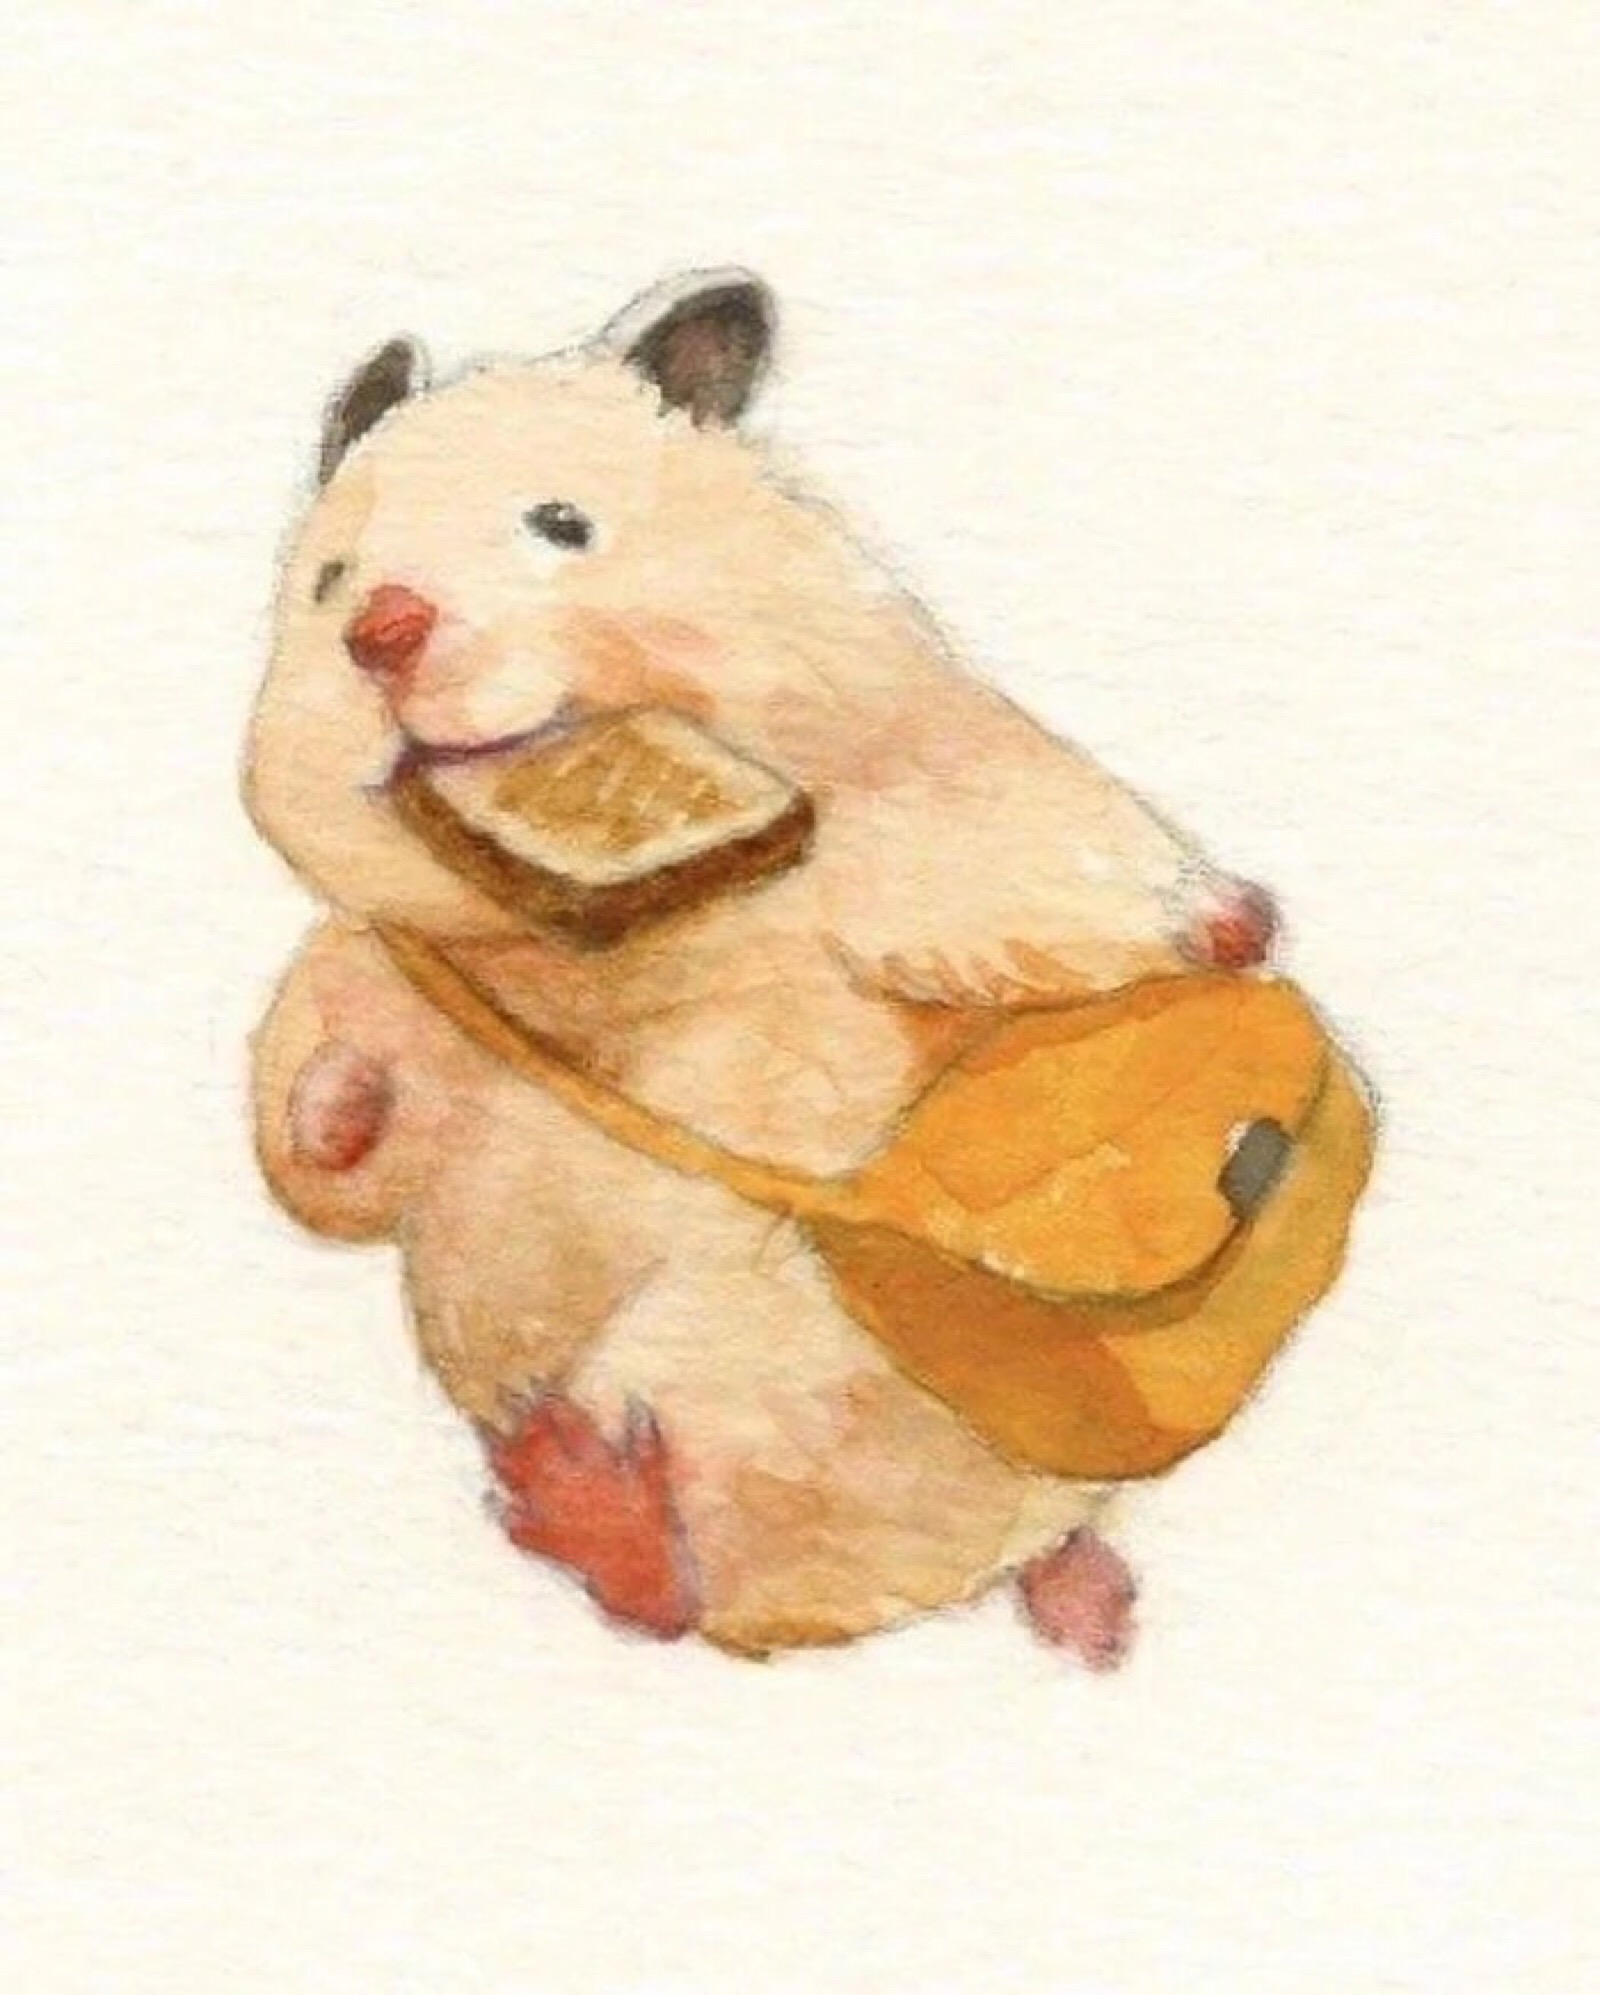 胖仓鼠可爱的卡通图片图片